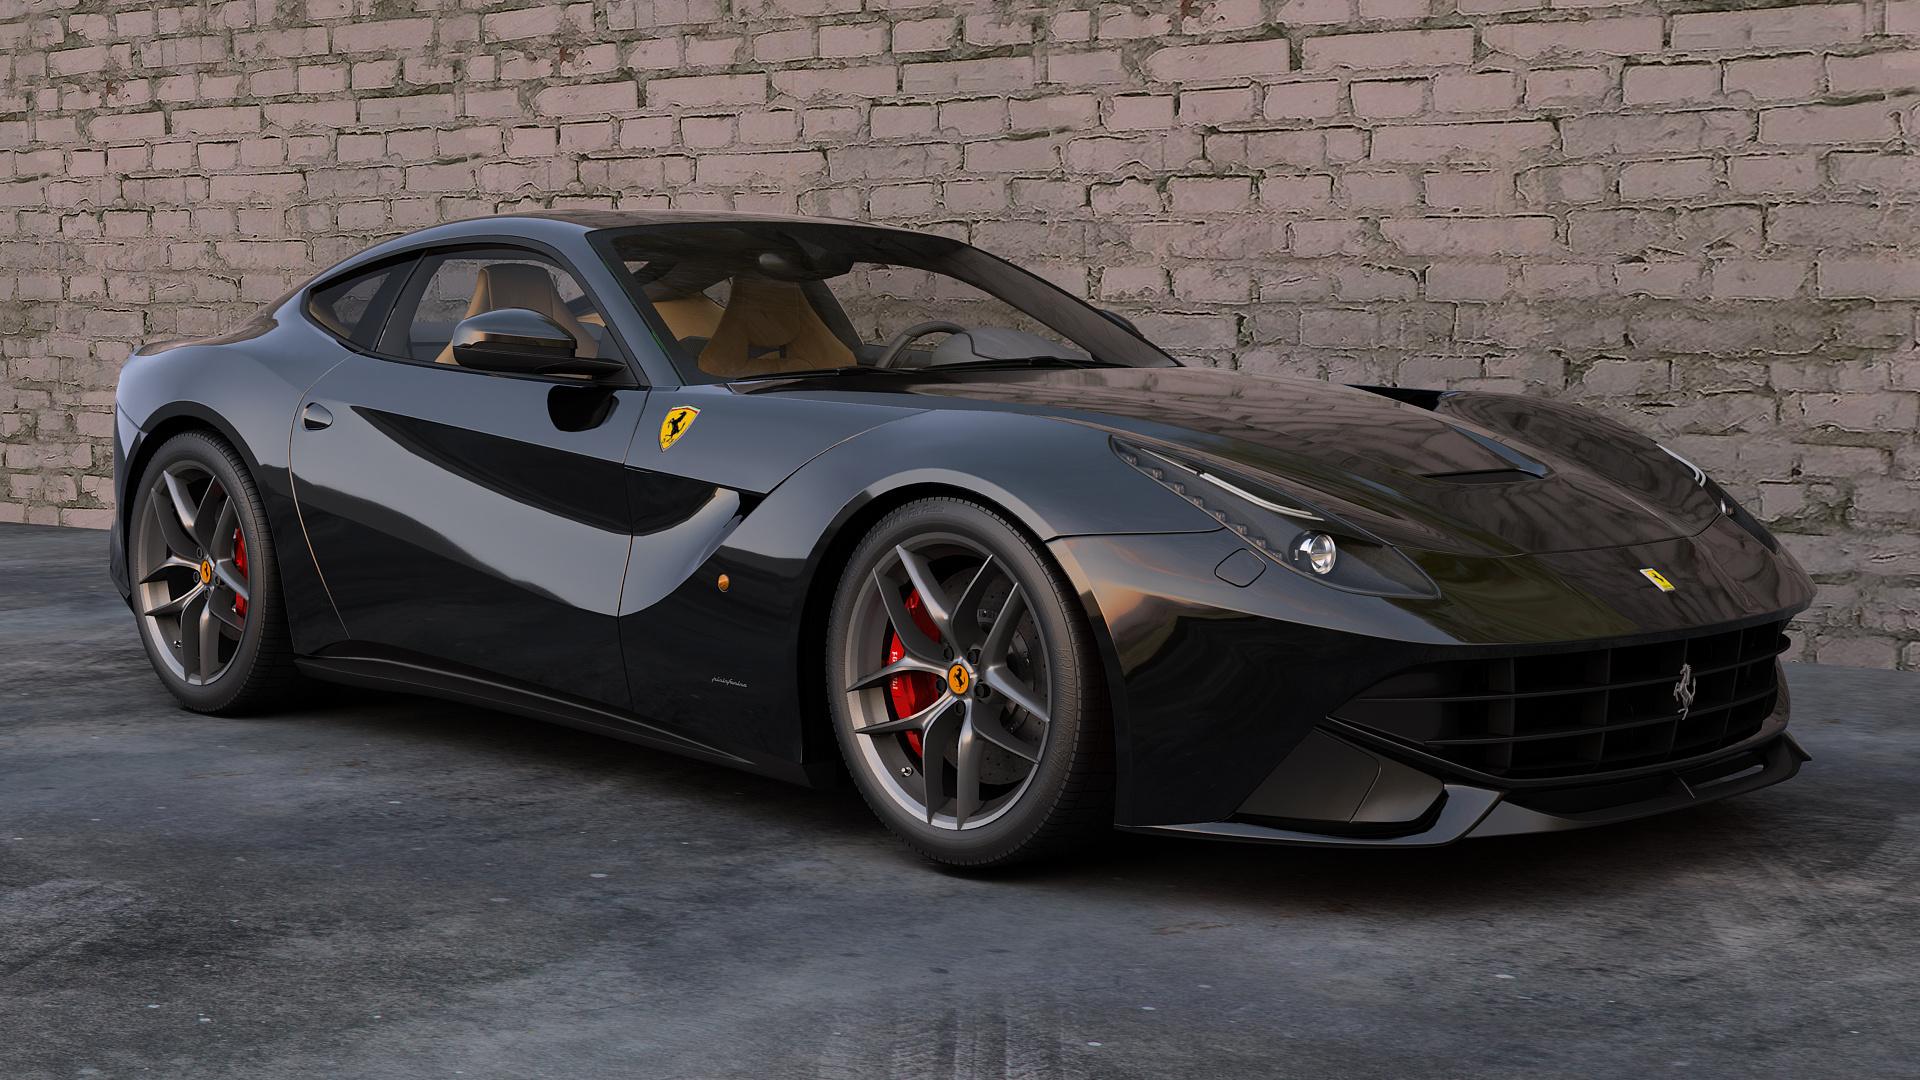 Descargar las imágenes de Ferrari gratis para teléfonos Android y iPhone,  fondos de pantalla de Ferrari para teléfonos móviles